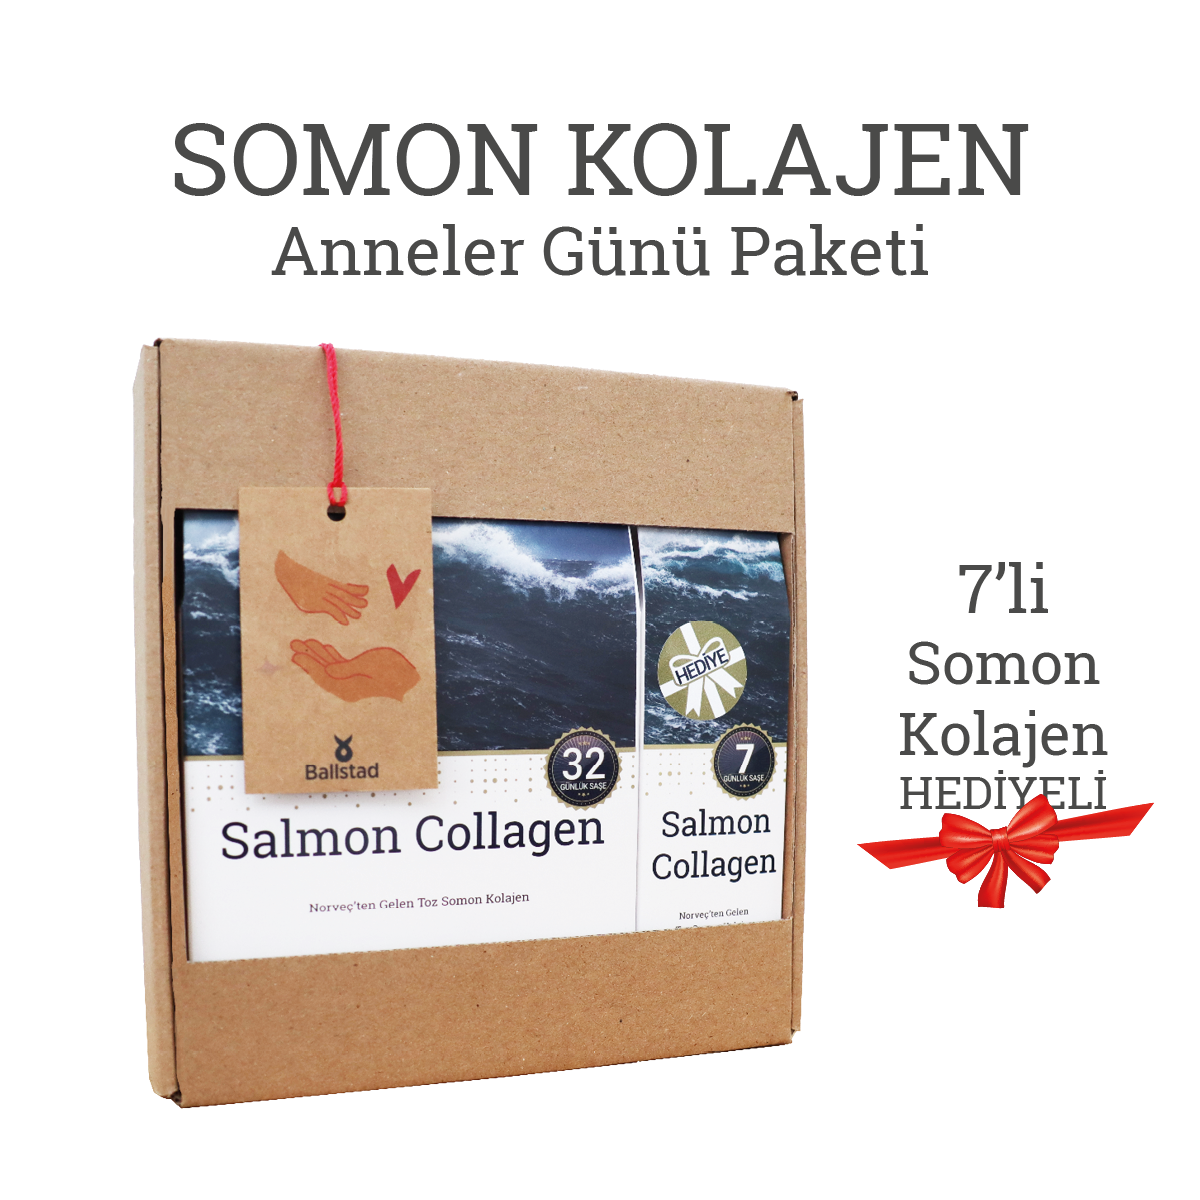 Ballstad Somon Kolajen - Anneler Günü Paketi